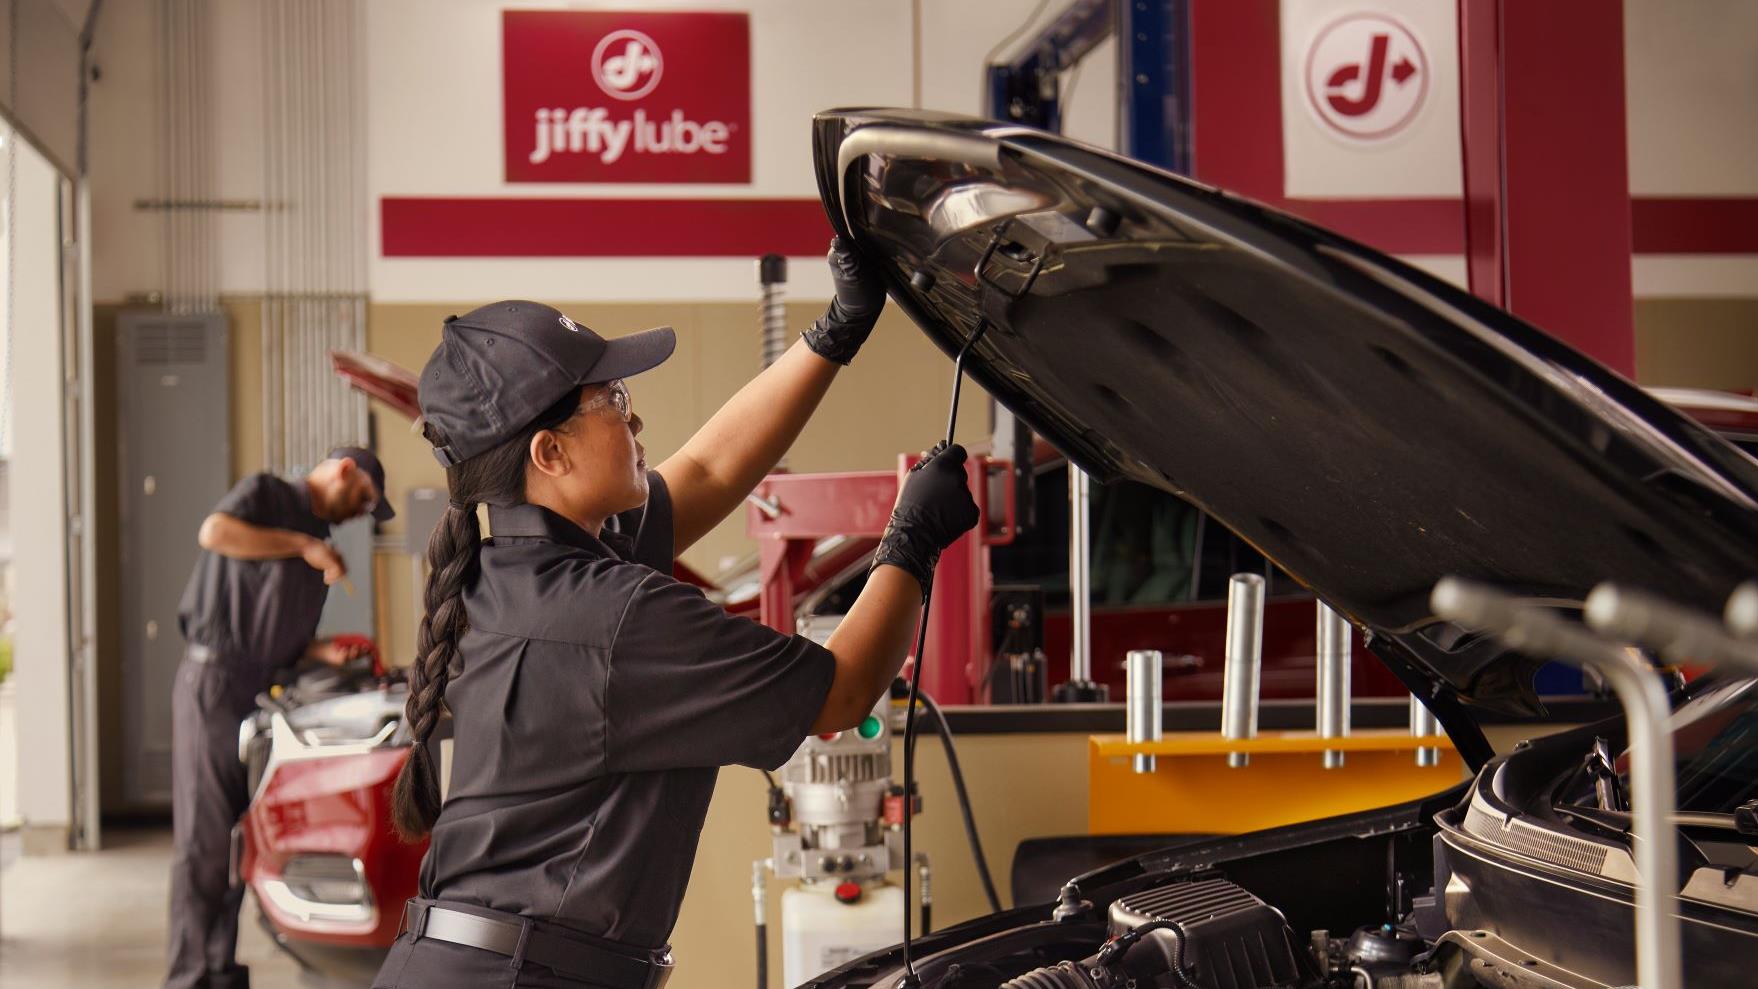 Jiffy Lube/Auto Repair/Service                                                                                                                                                                                     